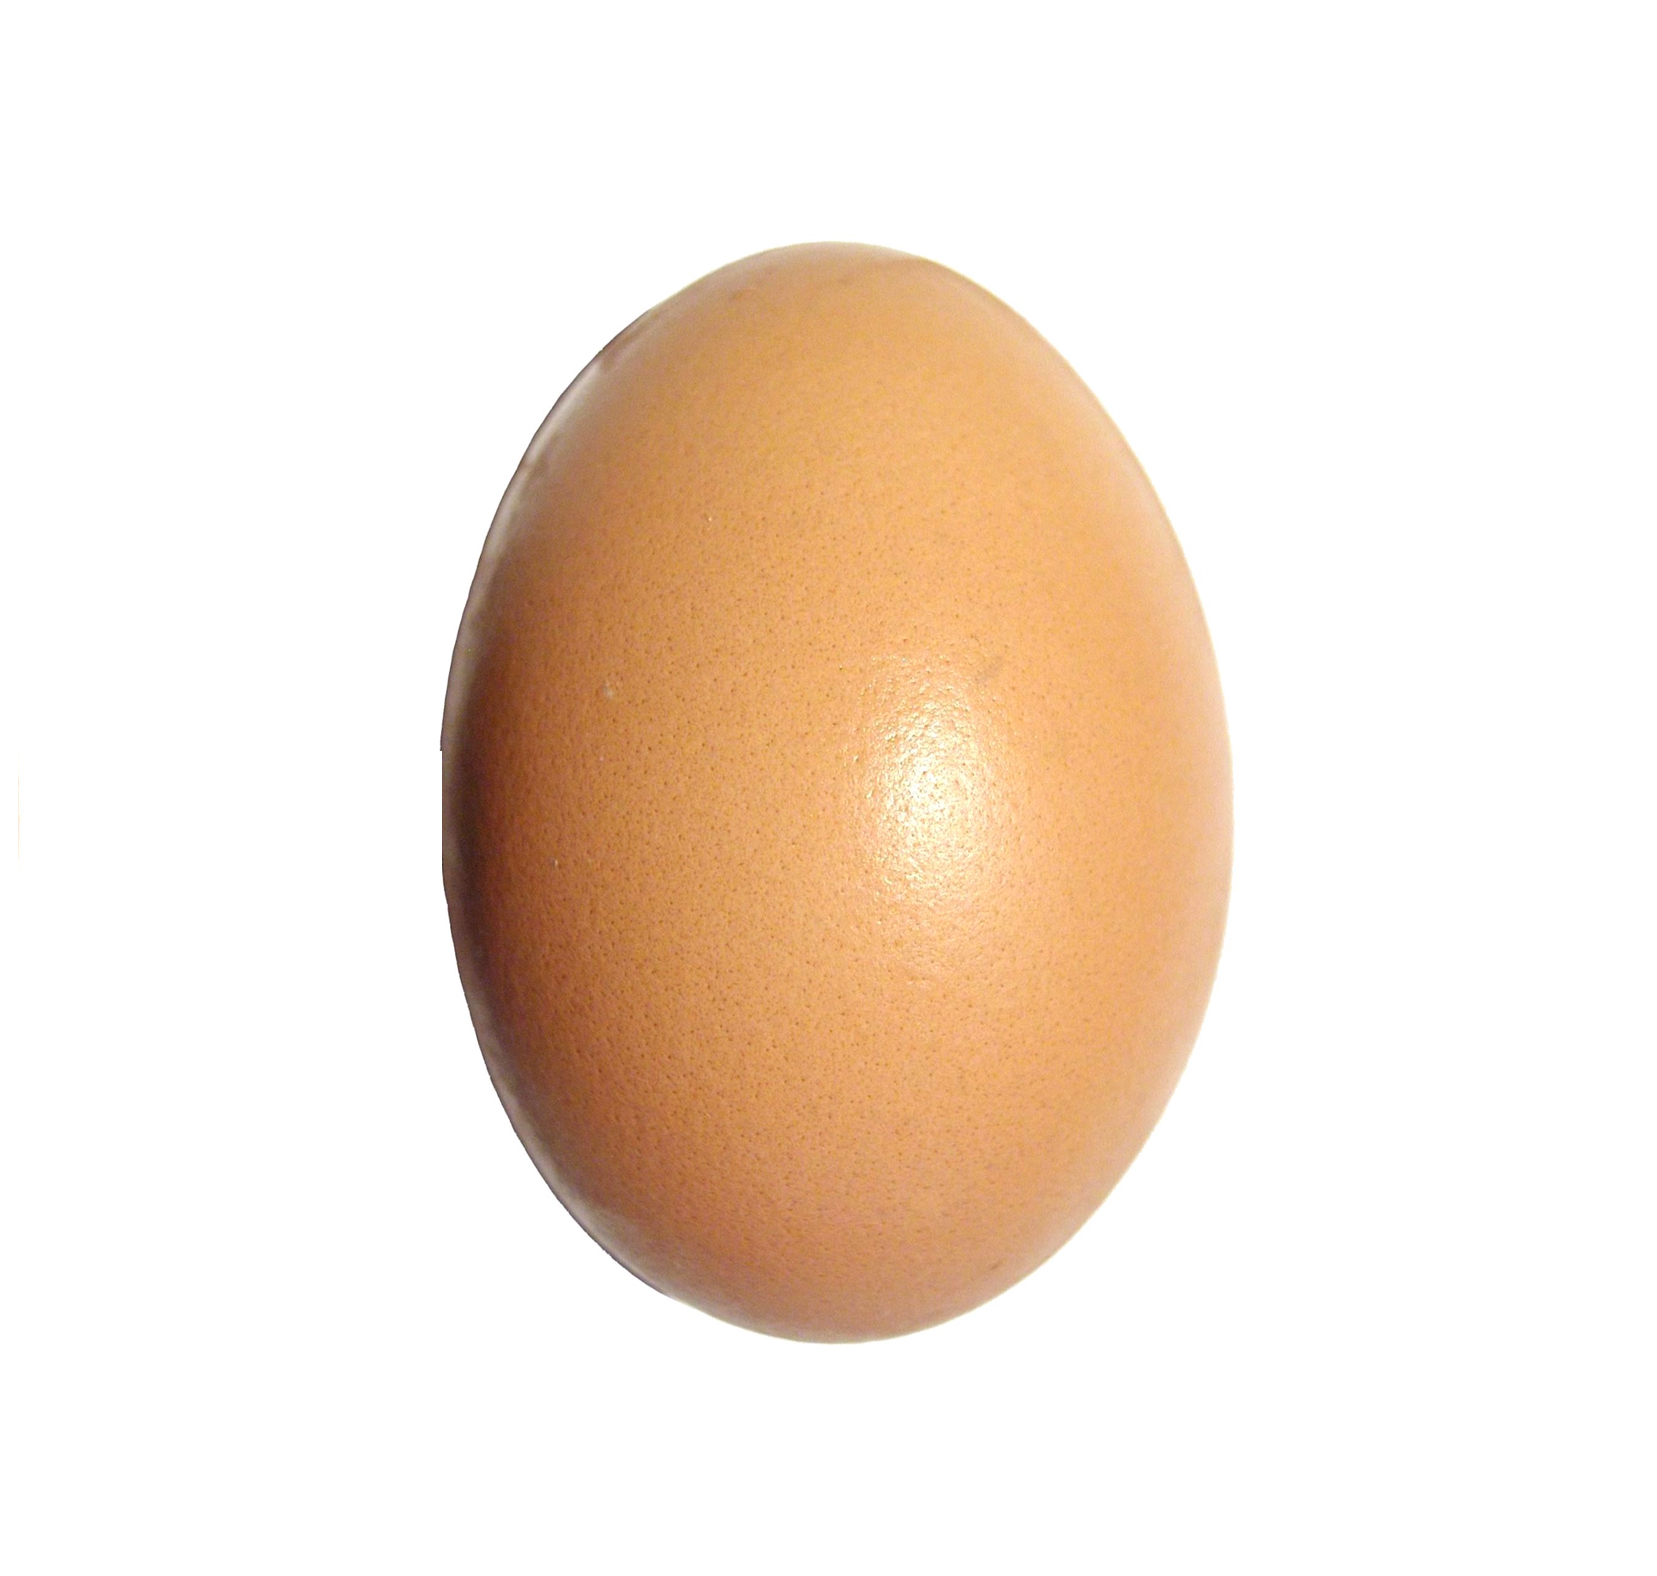 Egg_upright.jpg